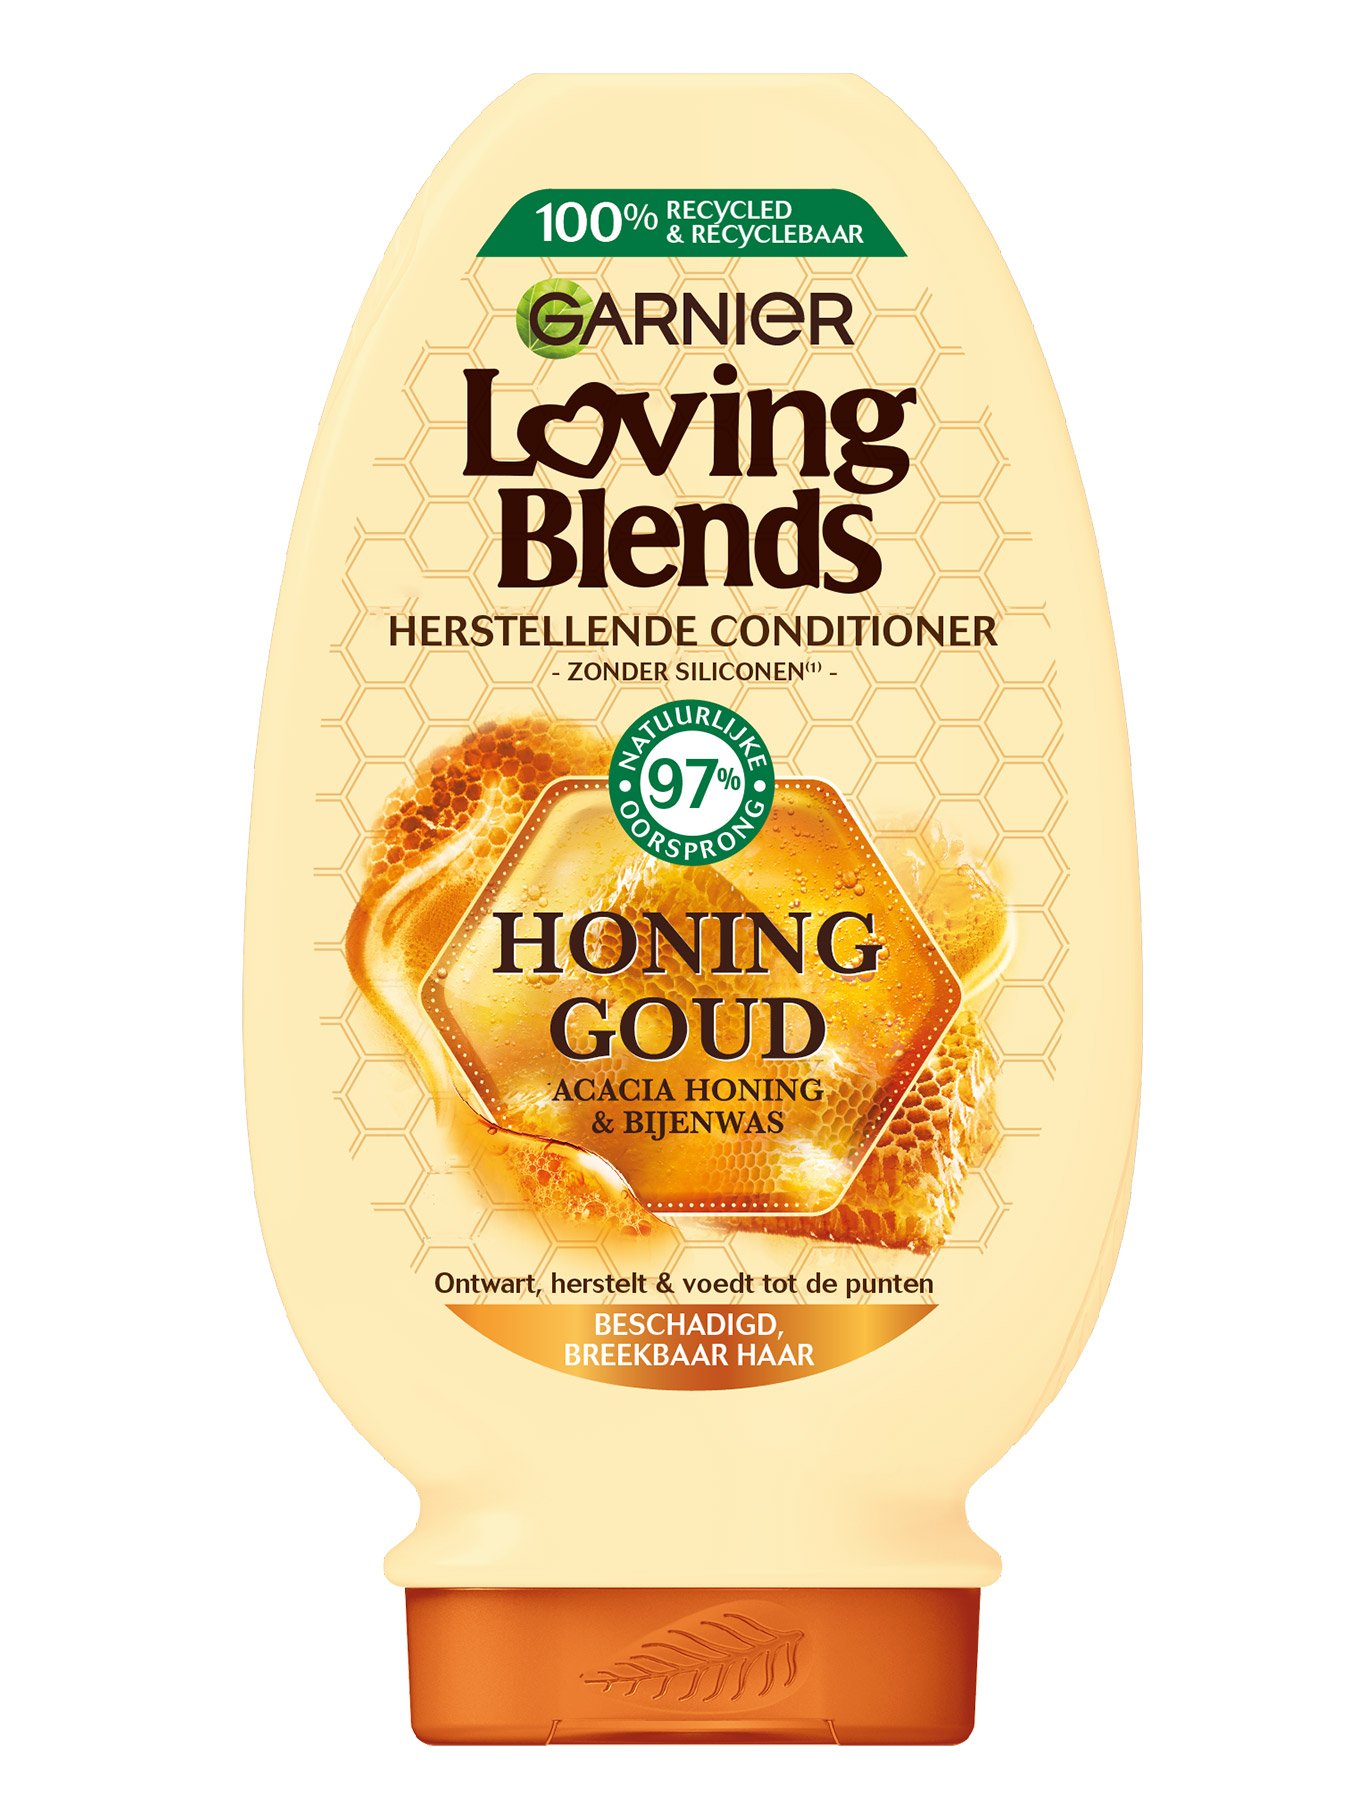 Consumeren lont bevind zich Herstellende Conditioner met Honing Goud | Garnier